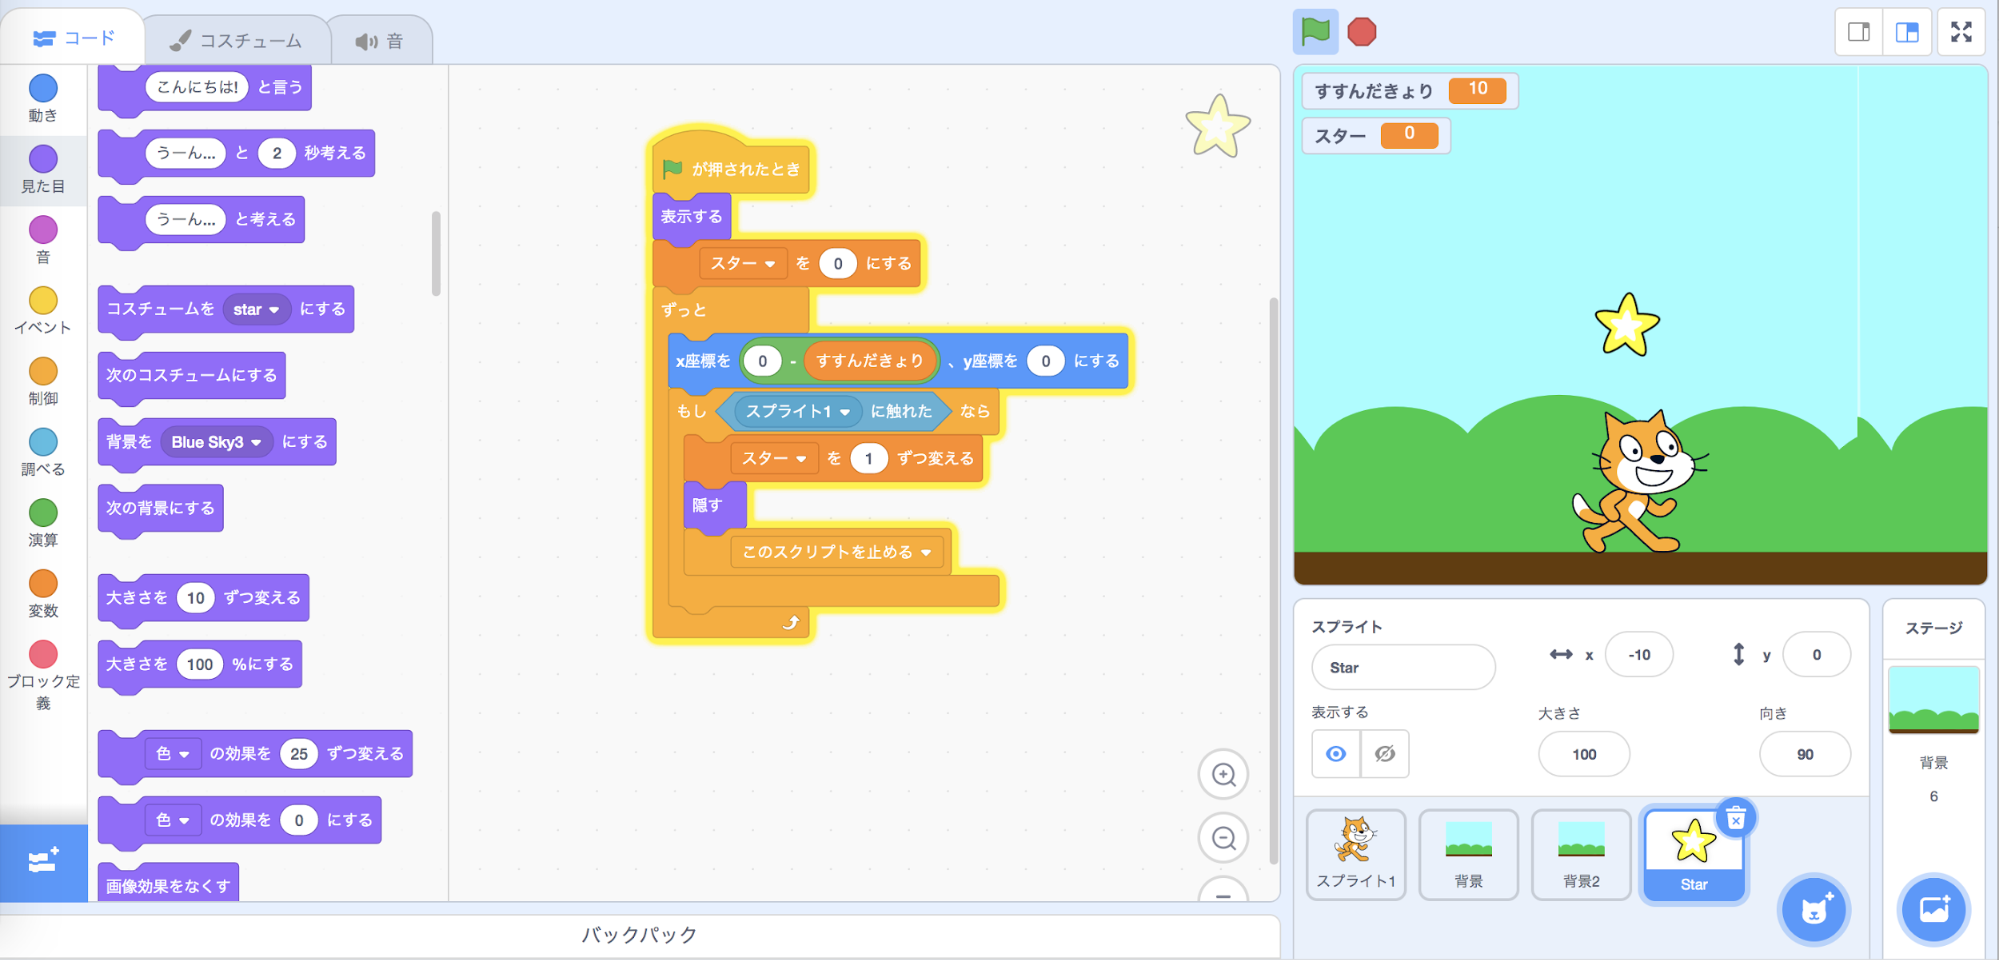 Scratchを使った 簡単アクションゲーム の作り方 横スクロールしてアイテムを取る方法 探究型プログラミング教室アルスクールのブログ